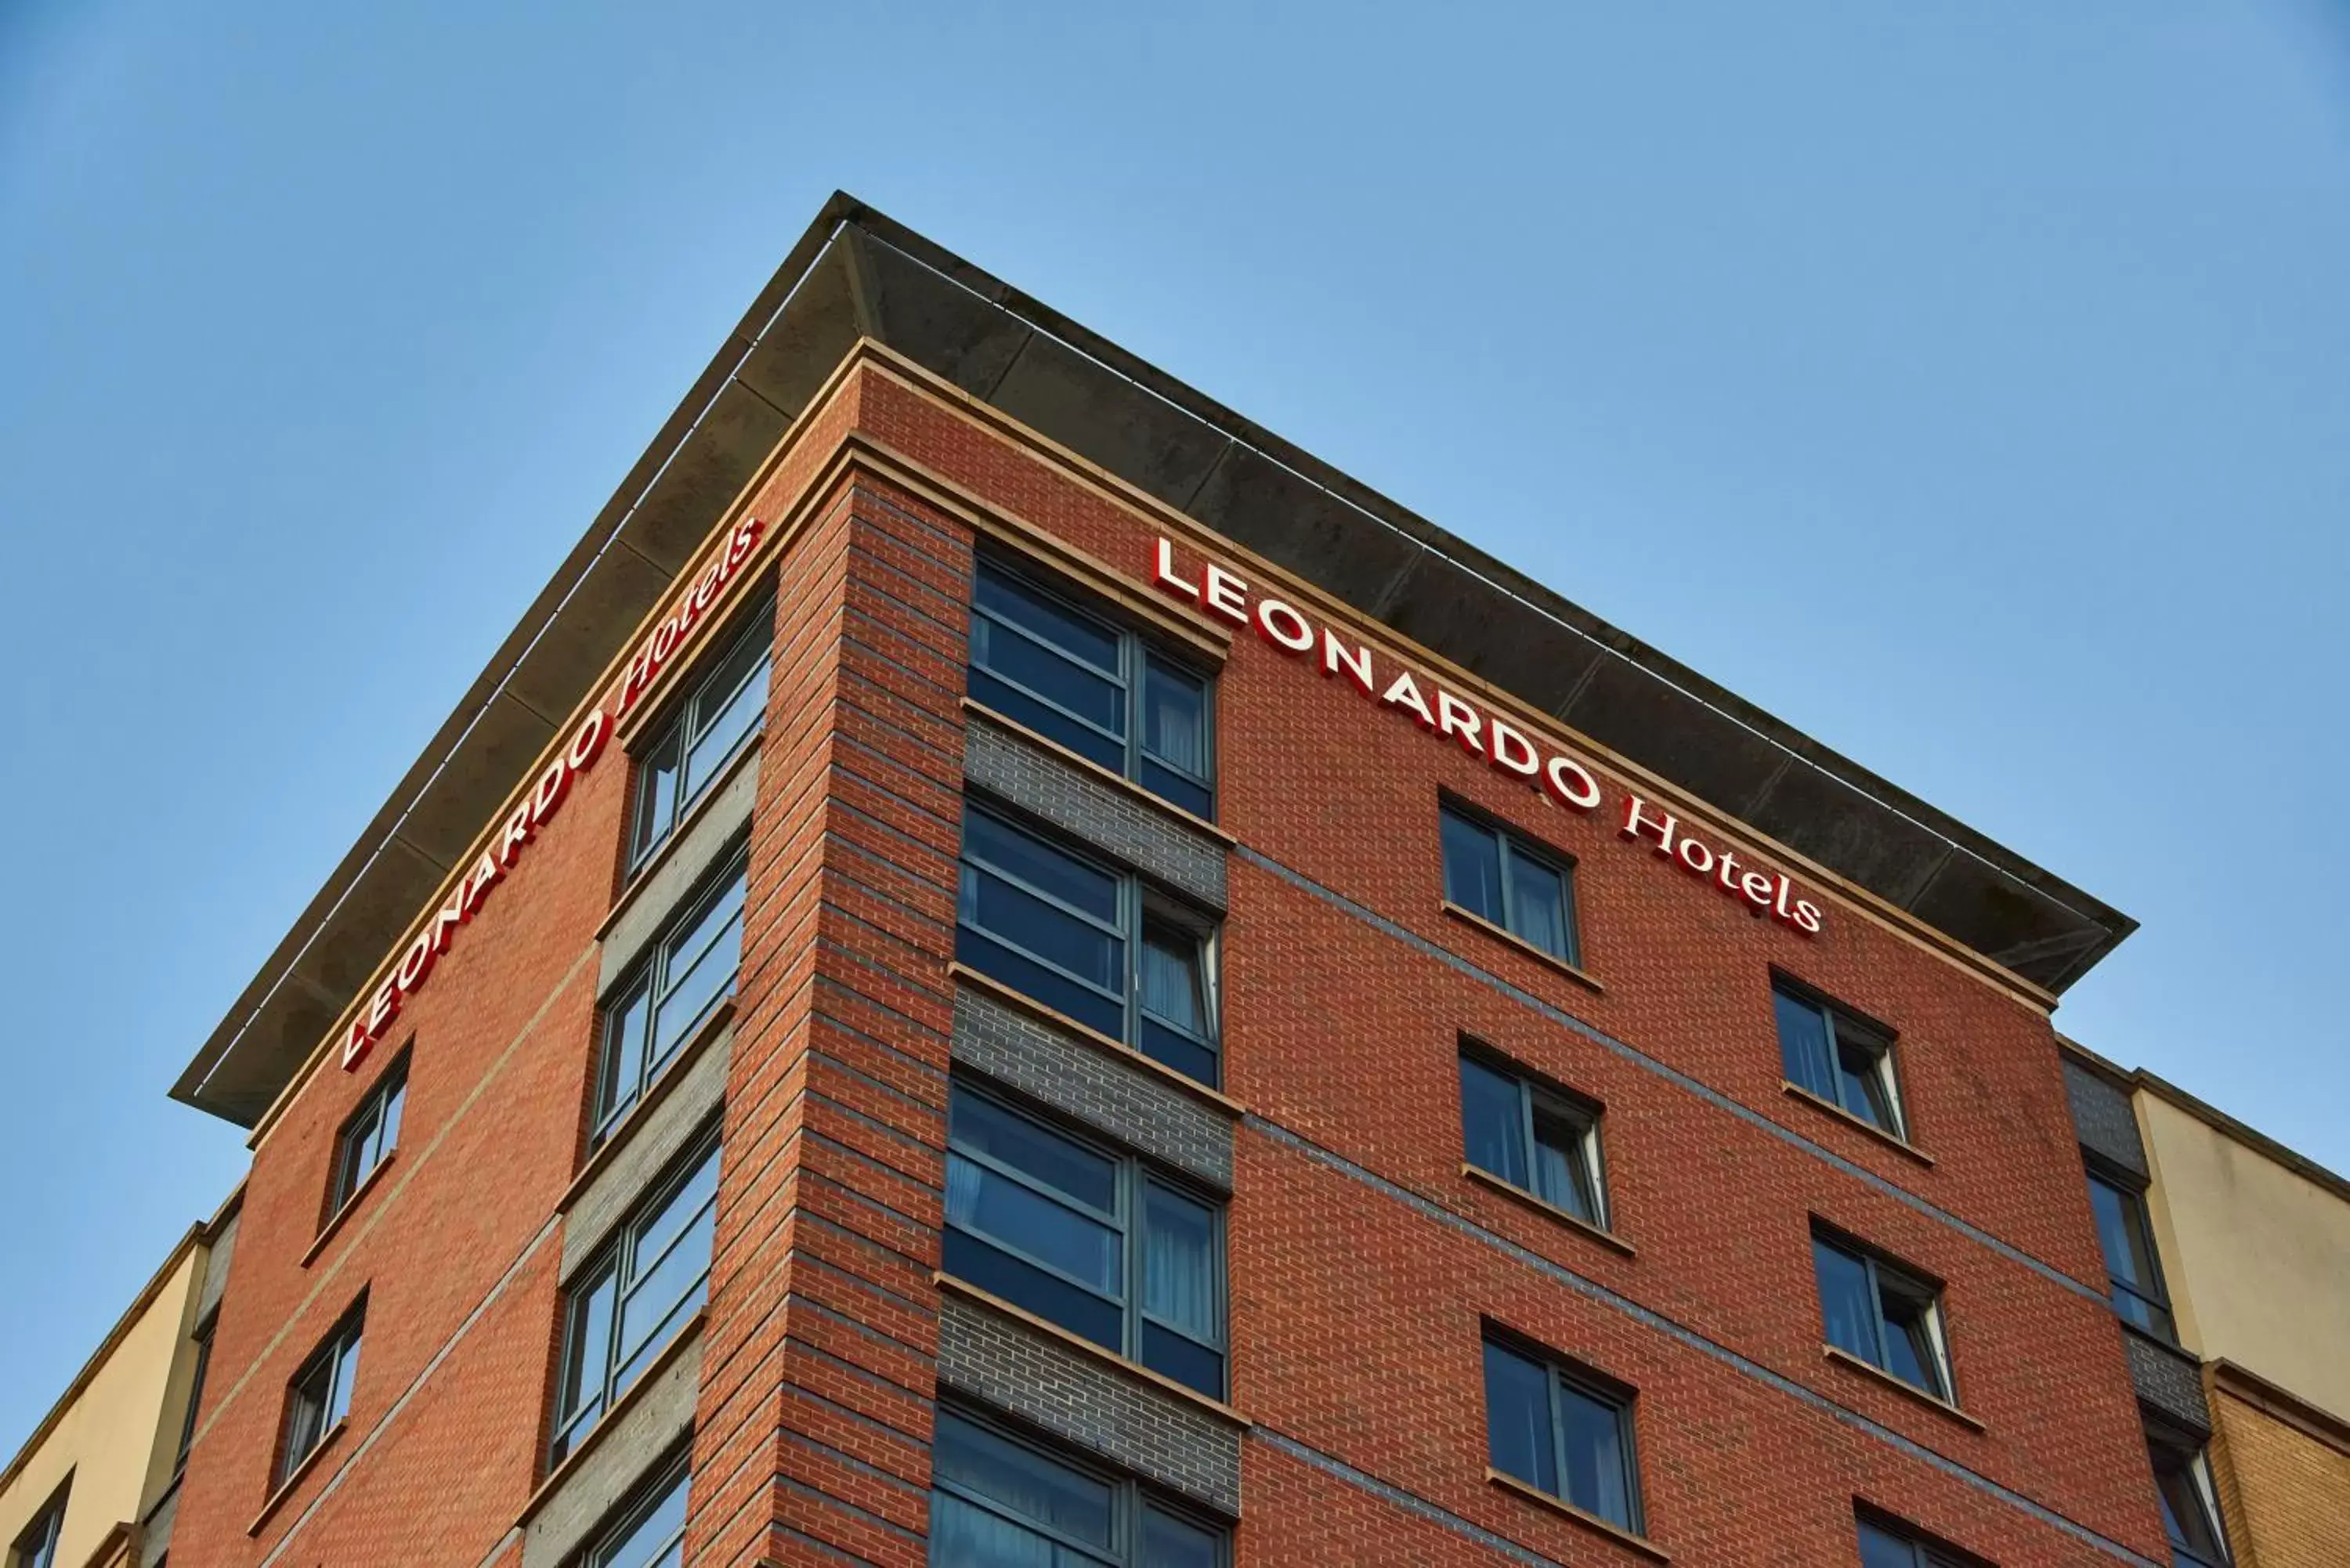 Property Building in Leonardo Hotel Newcastle - Formerly Jurys Inn